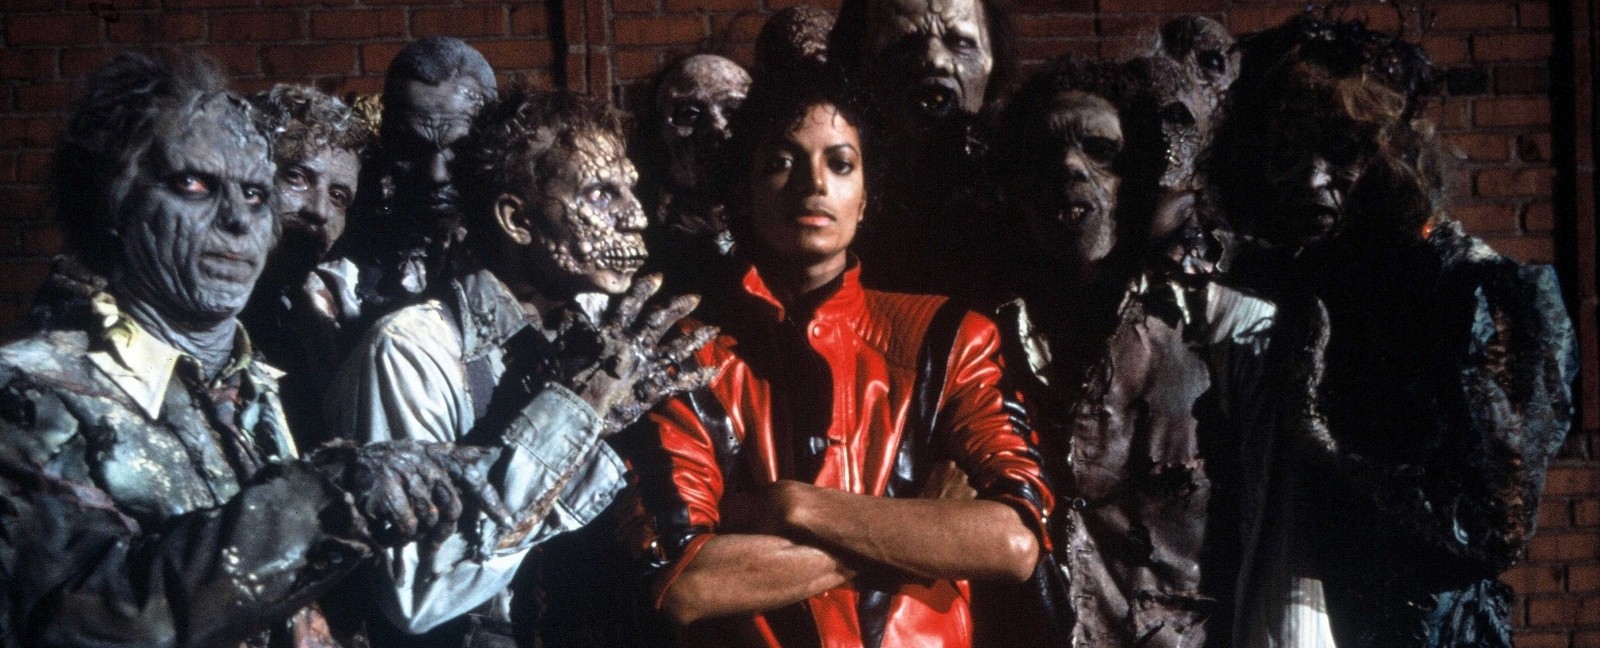 Escucha ‘Scream’ el lanzamiento especial de Michael Jackson para Halloween. cusica Plus.